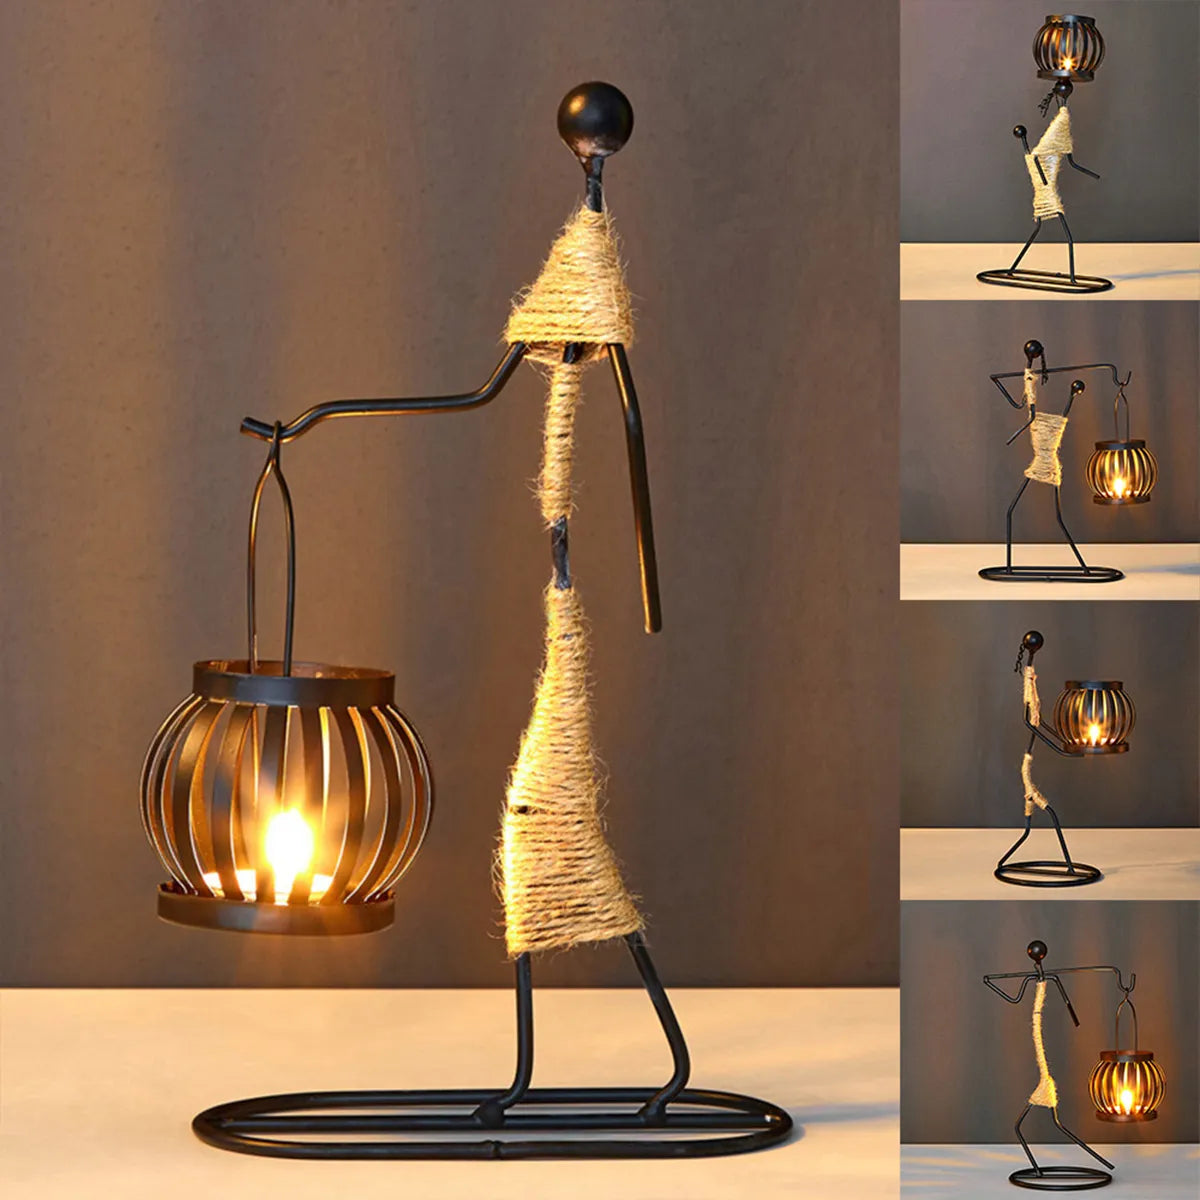 Pohjoismainen luova metalli kynttilänjalka abstrakti hahmo veistoksen kynttilänpidike musiikkibaari koristeelliset pienet koristeet kodinsisustus